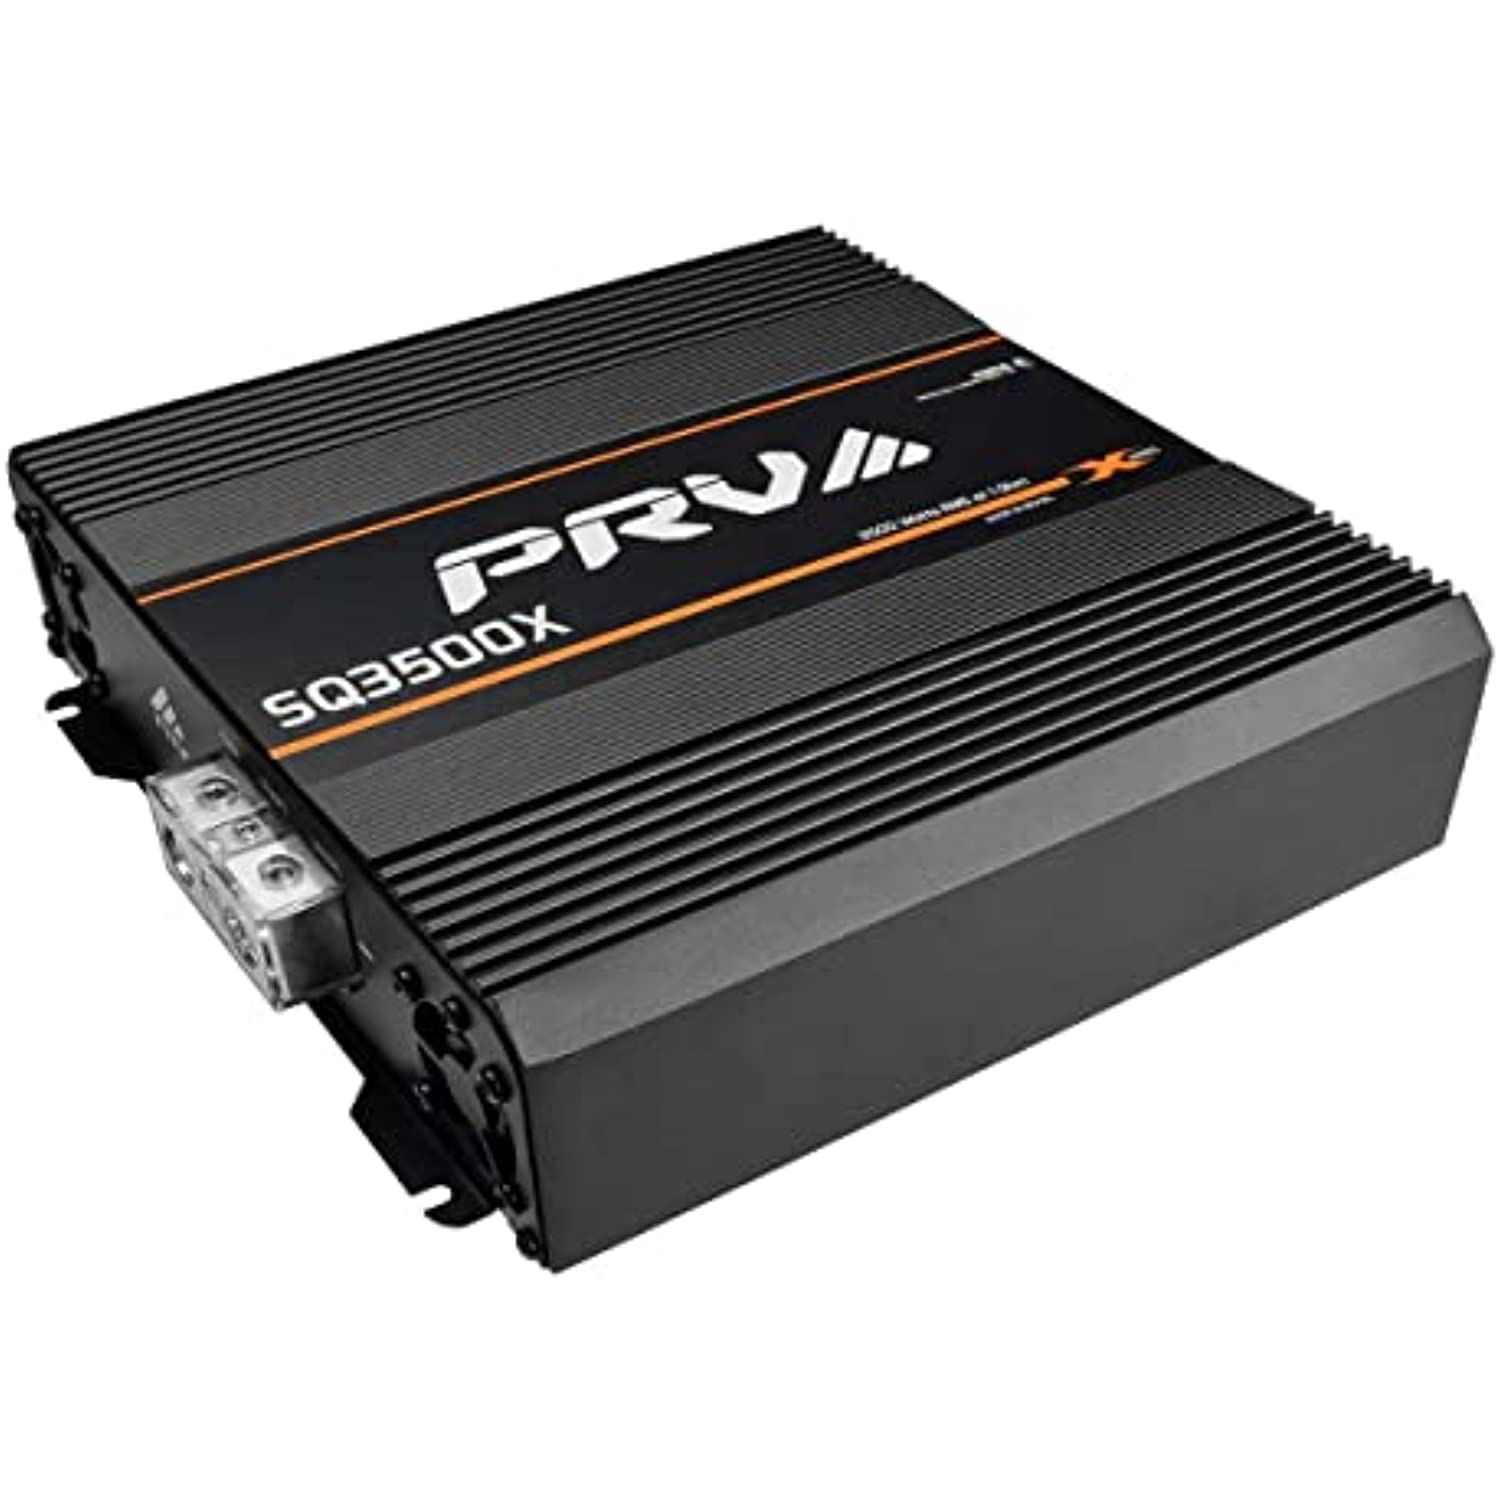 PRV AUDIO SQ3500X 1 Ohm Amplifier Car Audio Processor DSP 2.4X - BUNDLE